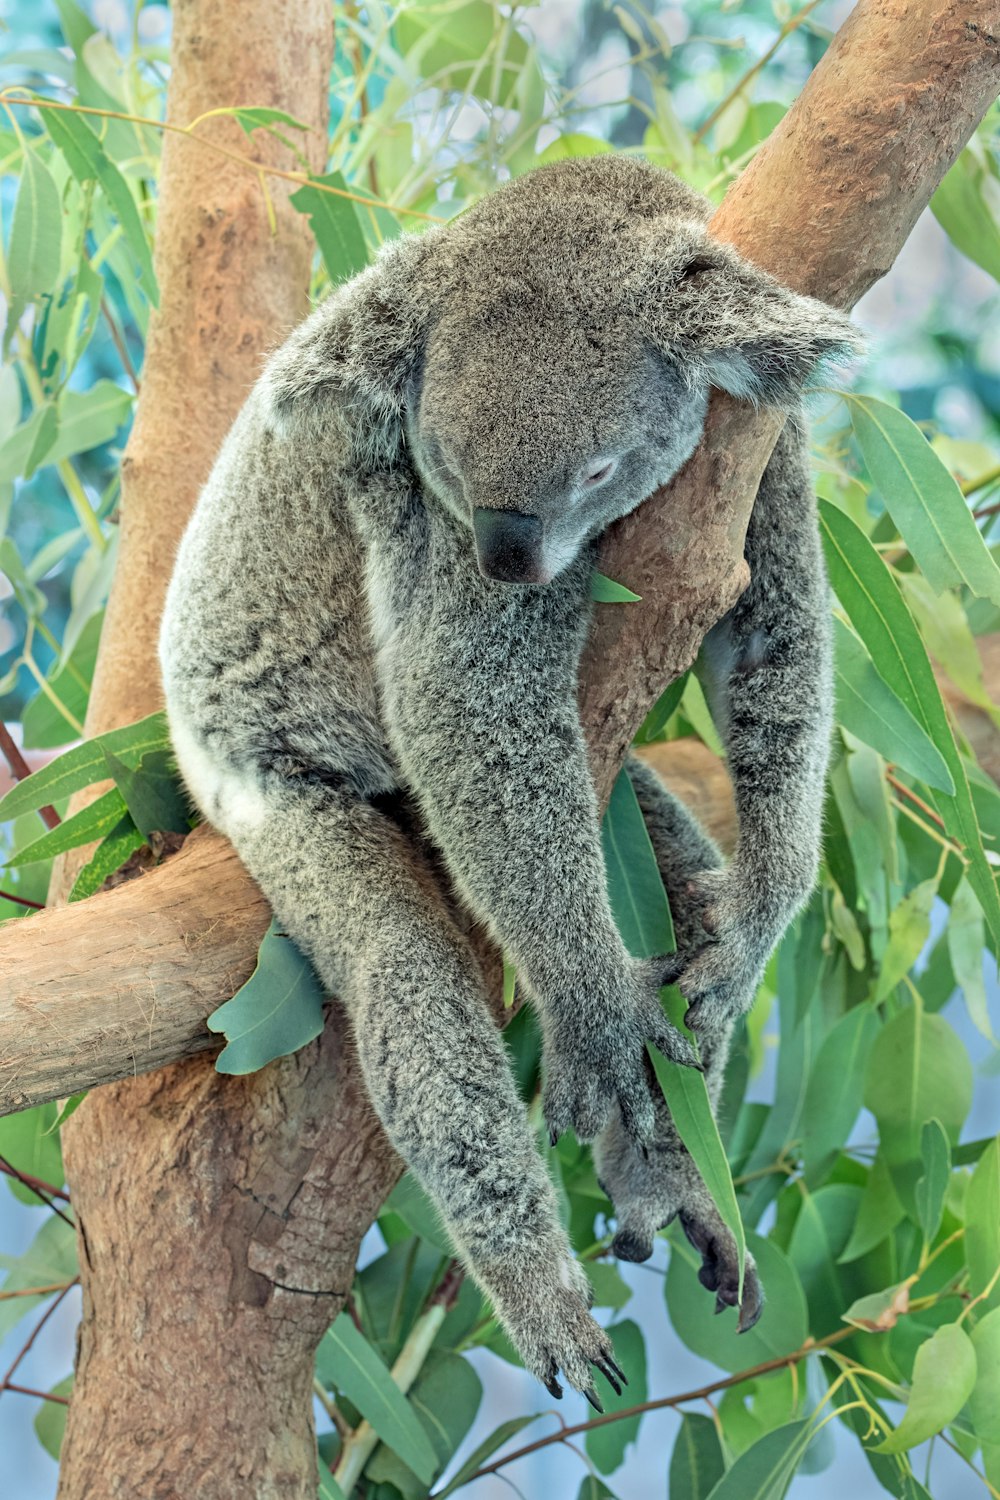 urso coala no galho marrom da árvore durante o dia